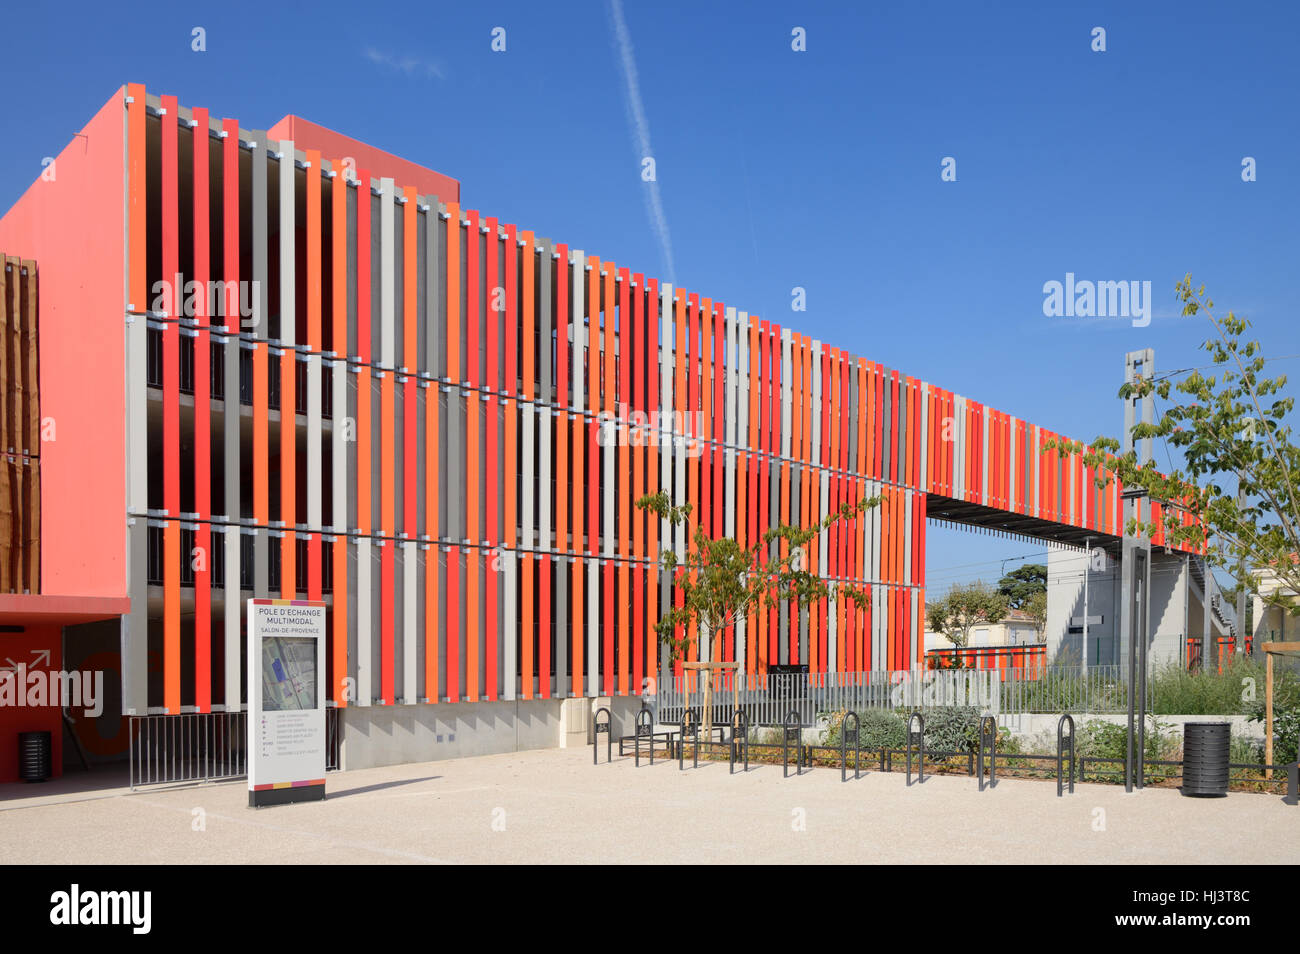 Timber-Clad Parking édifices colorés et passerelle au-dessus de voies de chemin de fer au salon ou Salon-de-Provence Provence France Banque D'Images